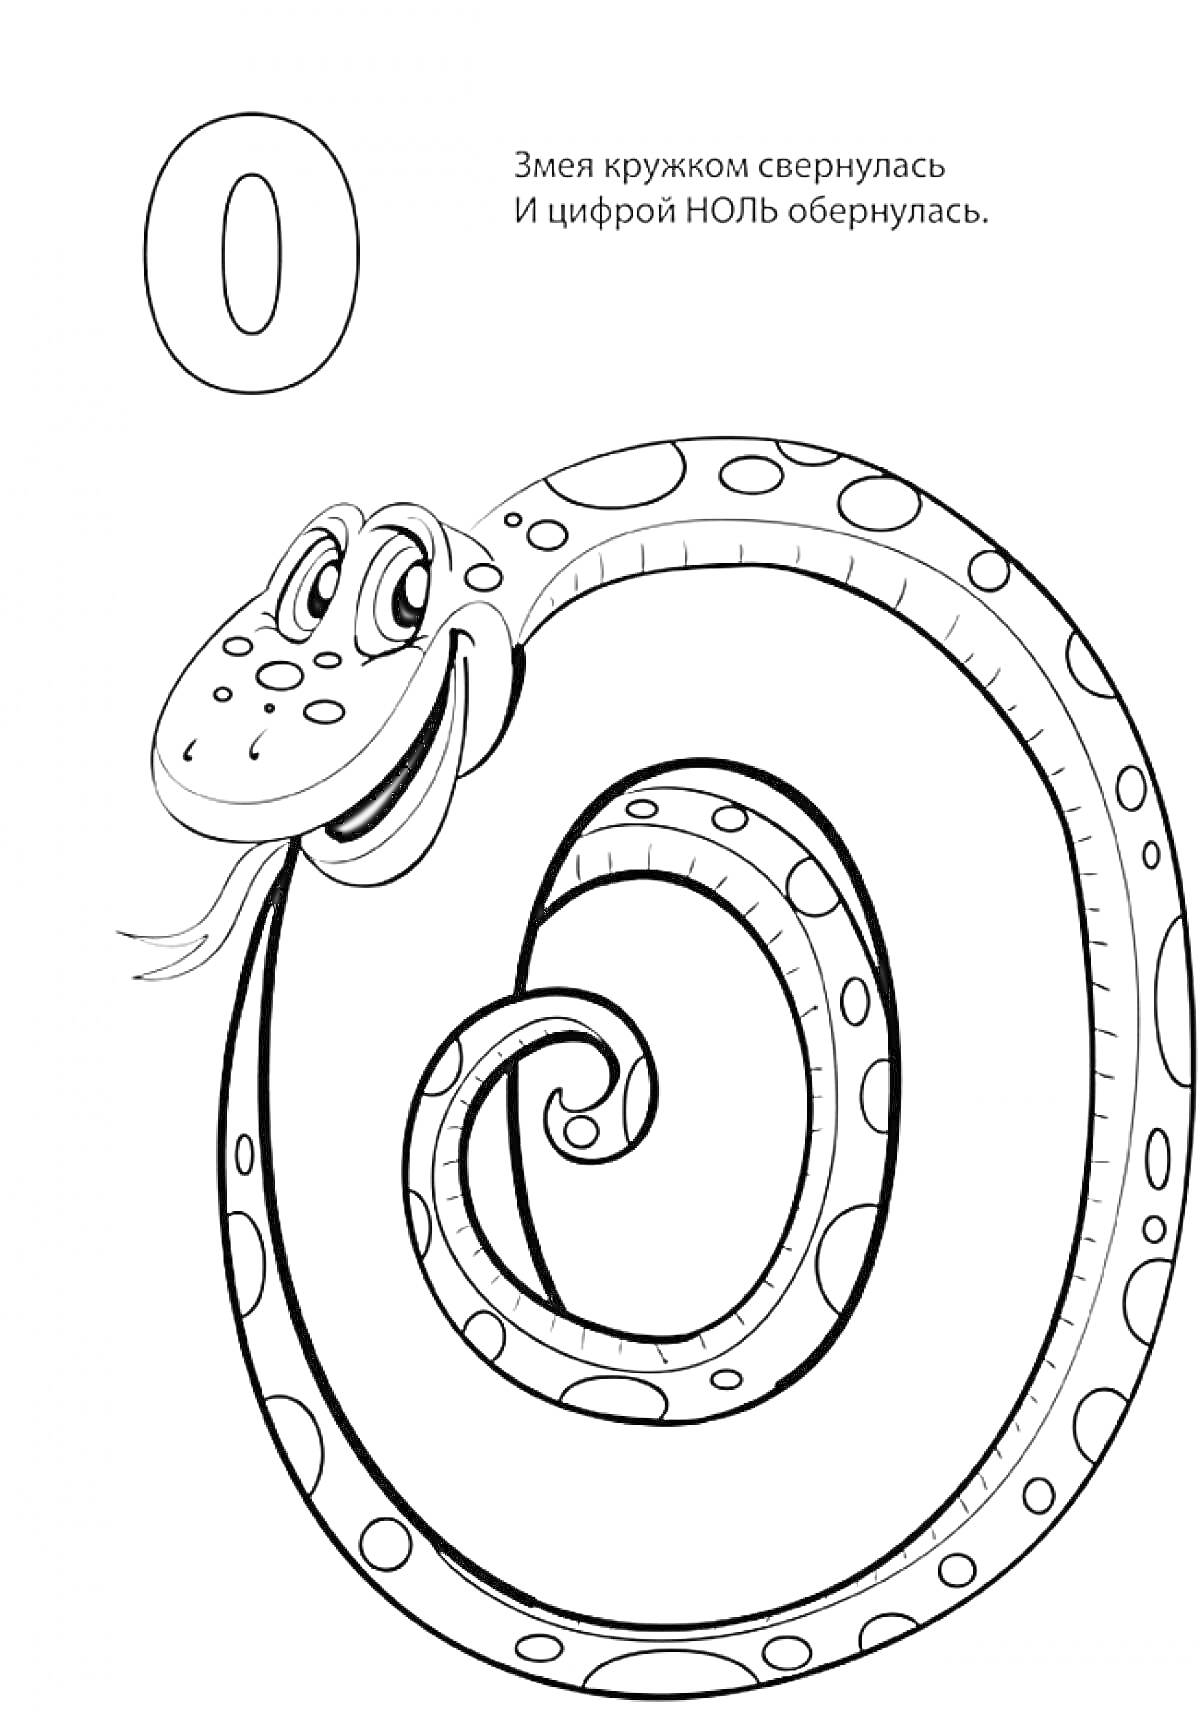 Раскраска Цифра 0, Змея, свернутая в форме цифры 0, рисунок для раскрашивания